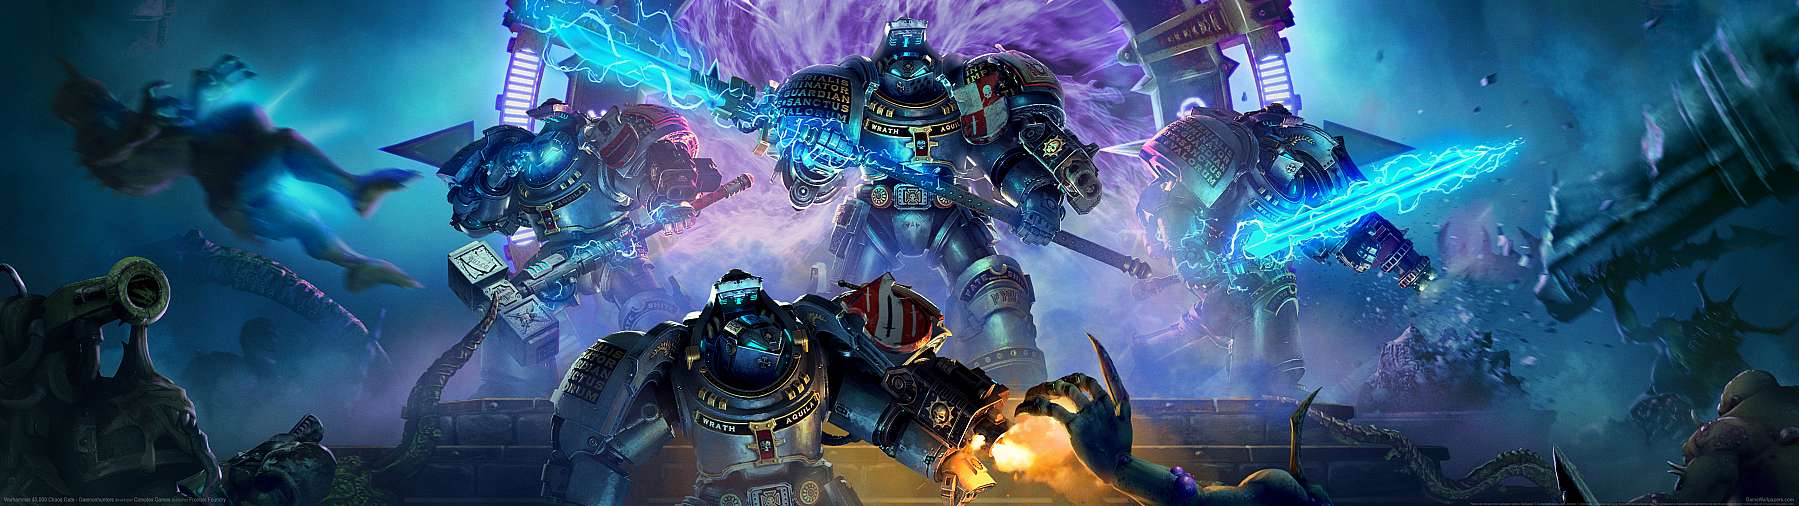 Warhammer 40,000: Chaos Gate - Daemonhunters fond d'cran